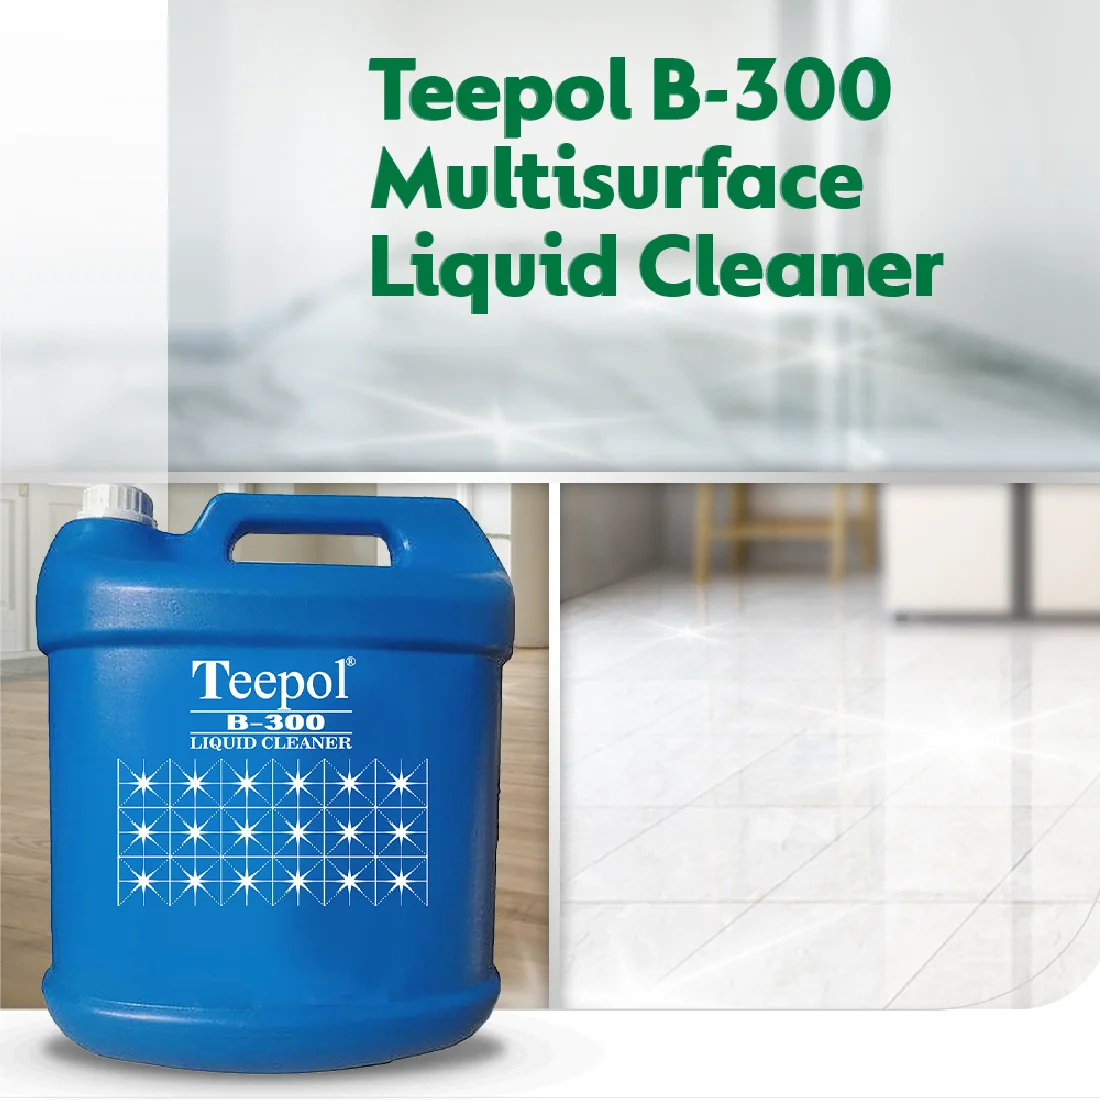 Teepol Liquid Cleaner